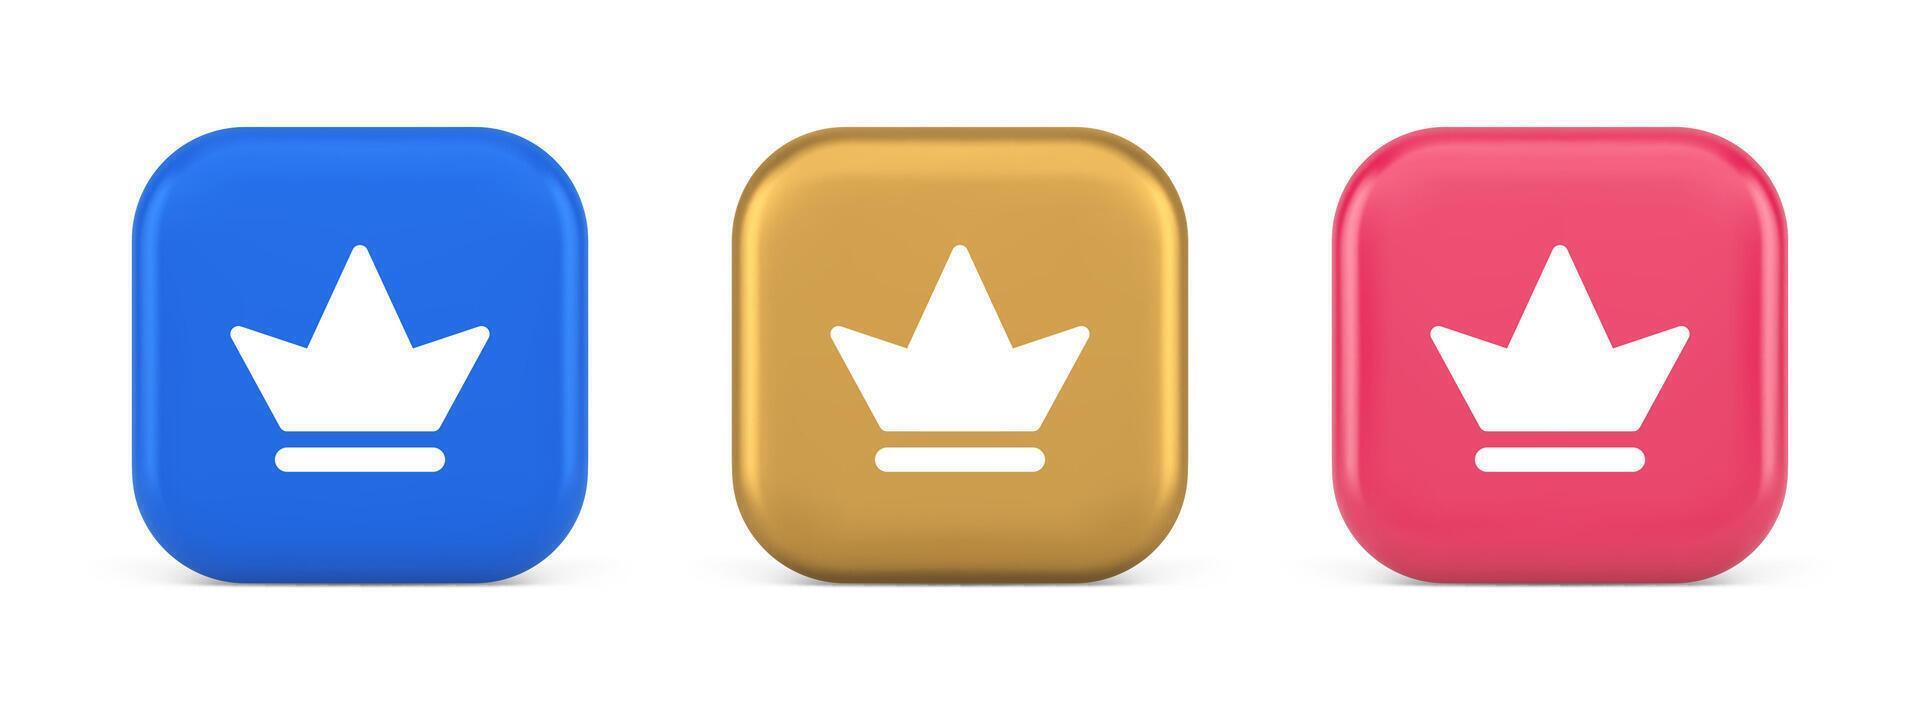 corona botón real medieval Rey reina tocado web aplicación 3d realista icono vector